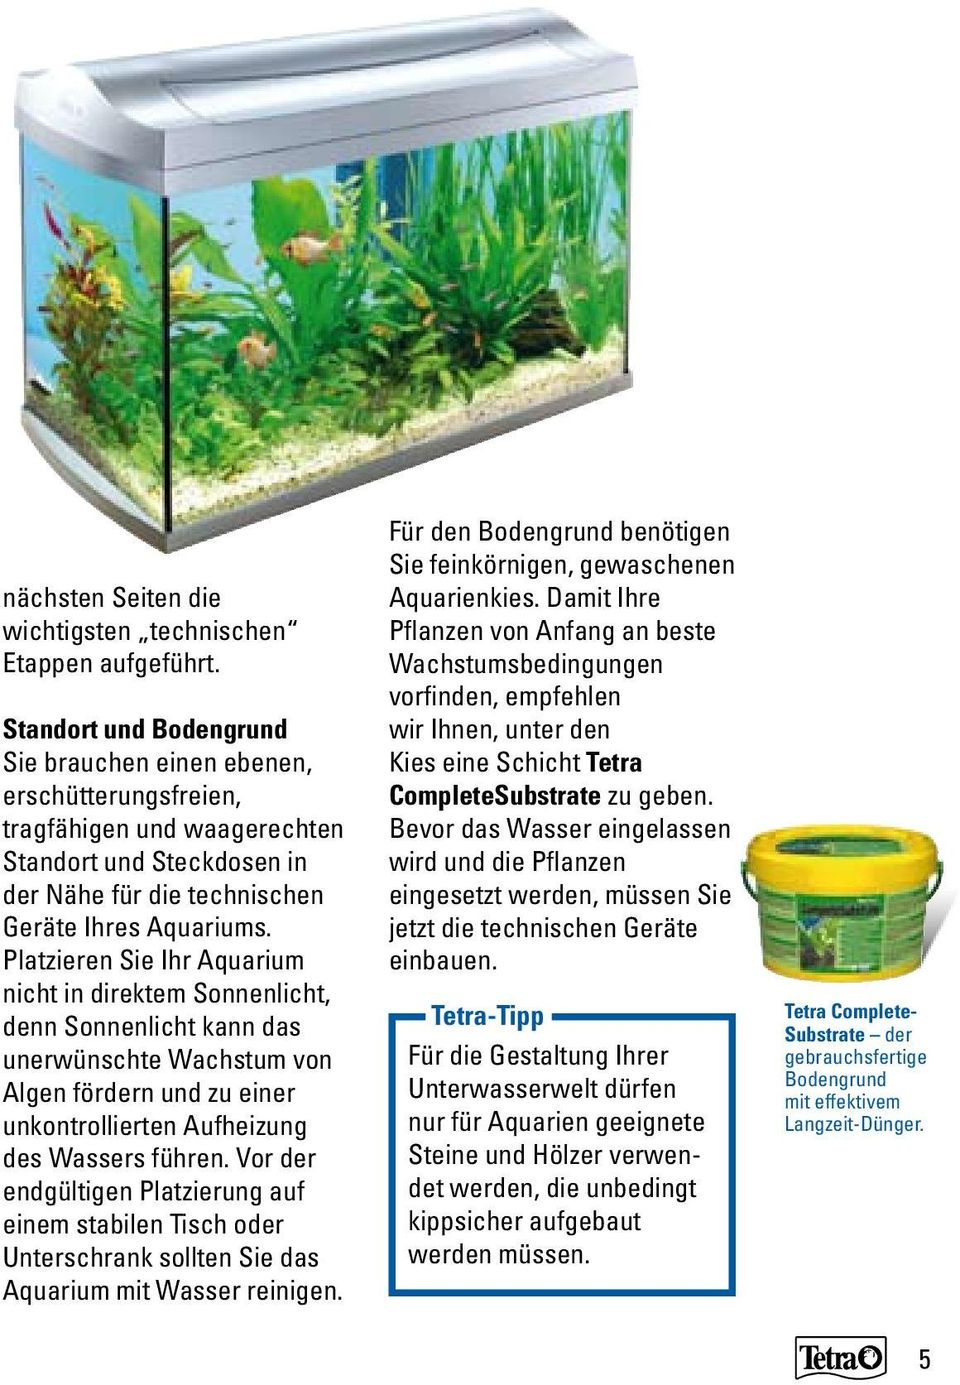 Platzieren Sie Ihr Aquarium nicht in direktem Sonnenlicht, denn Sonnenlicht kann das unerwünschte Wachstum von Algen fördern und zu einer unkontrollierten Aufheizung des Wassers führen.